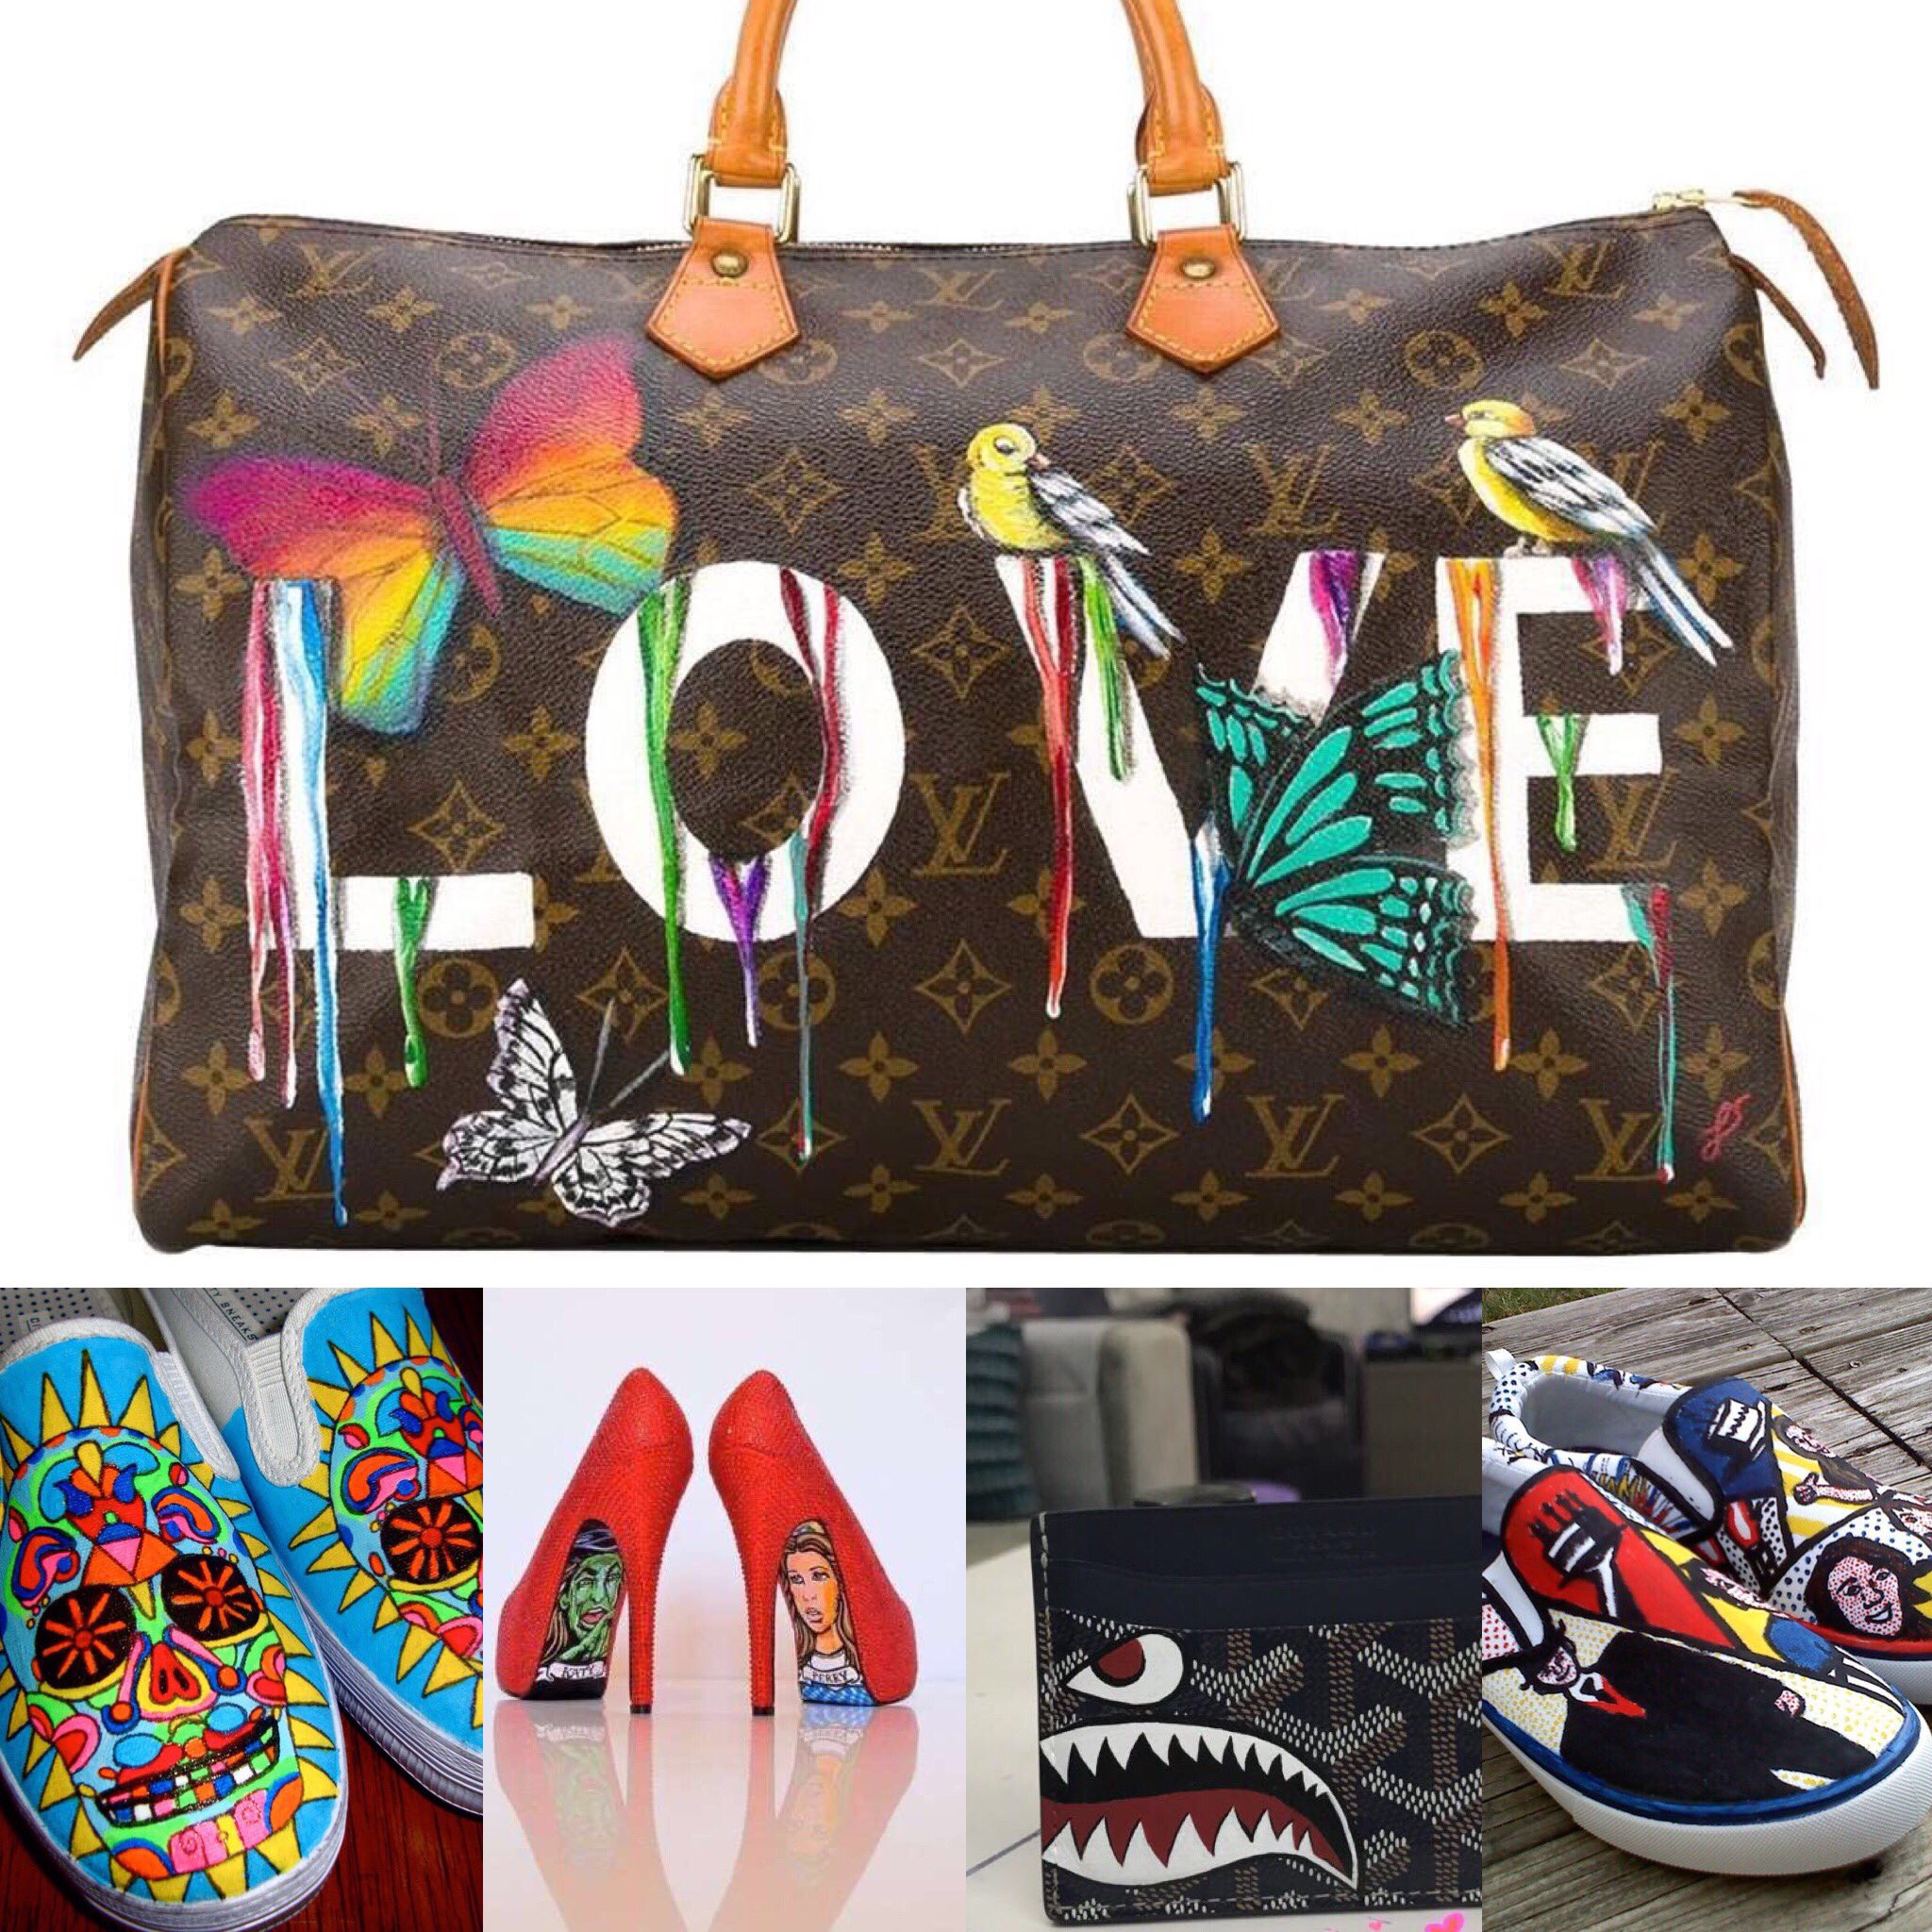 LV #macbook #brands :)  Louis vuitton handbags outlet, Louis